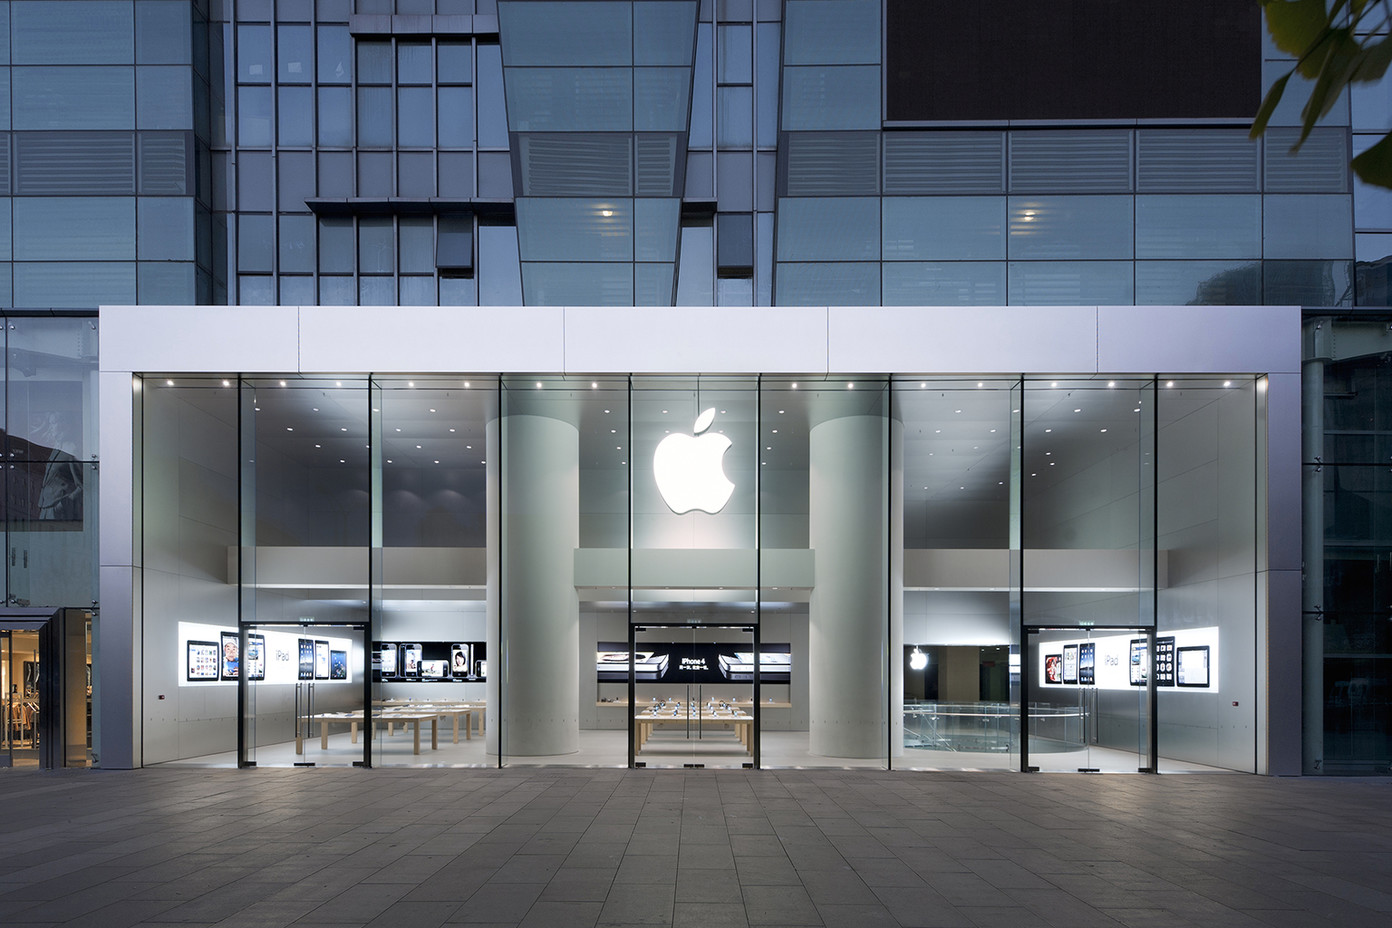 【截止2018年】上海苹果官方直营店概况 - 苹果手机维修点 - 丢锋网